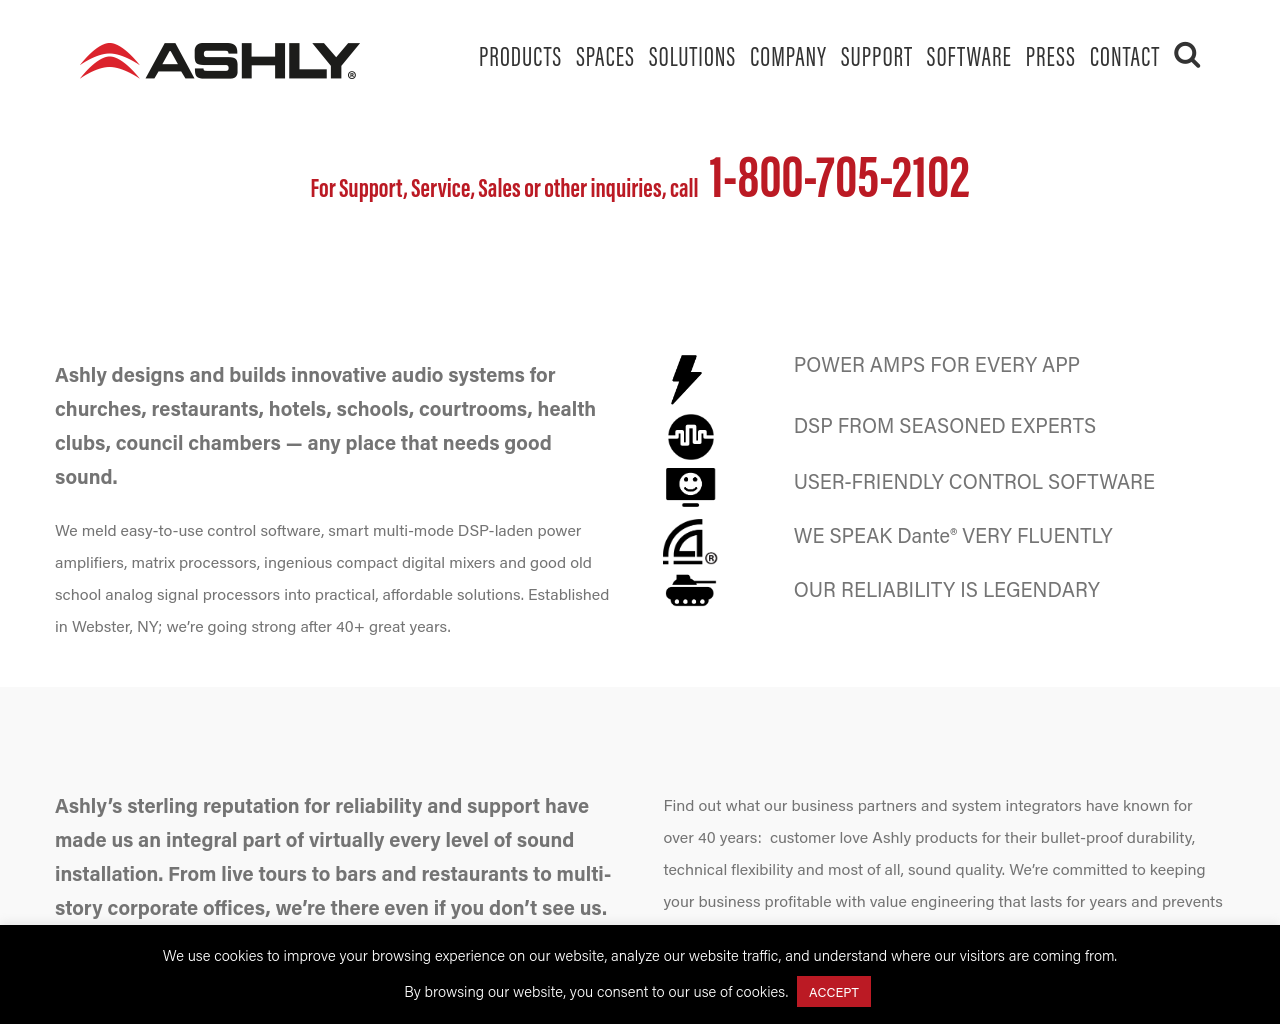 ashly.com